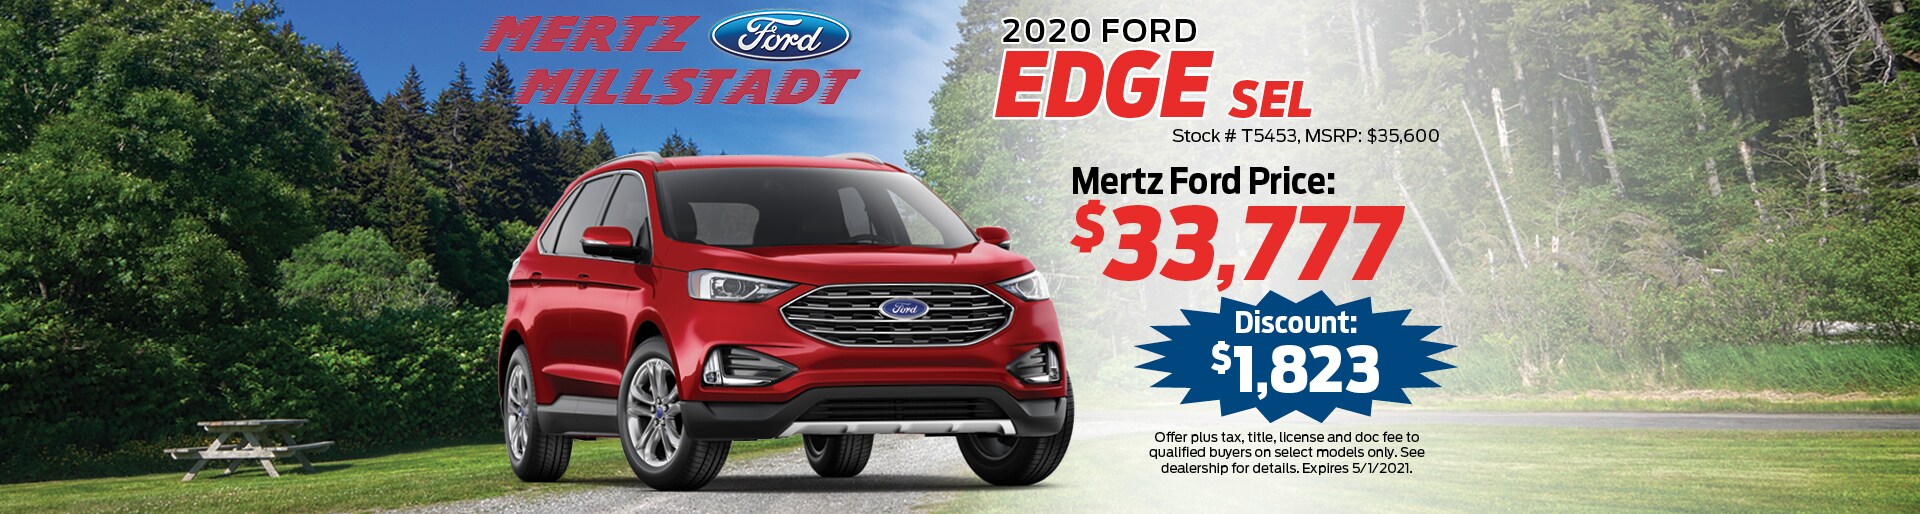 2020 Ford Edge SEL Buy Offer | Mertz Ford